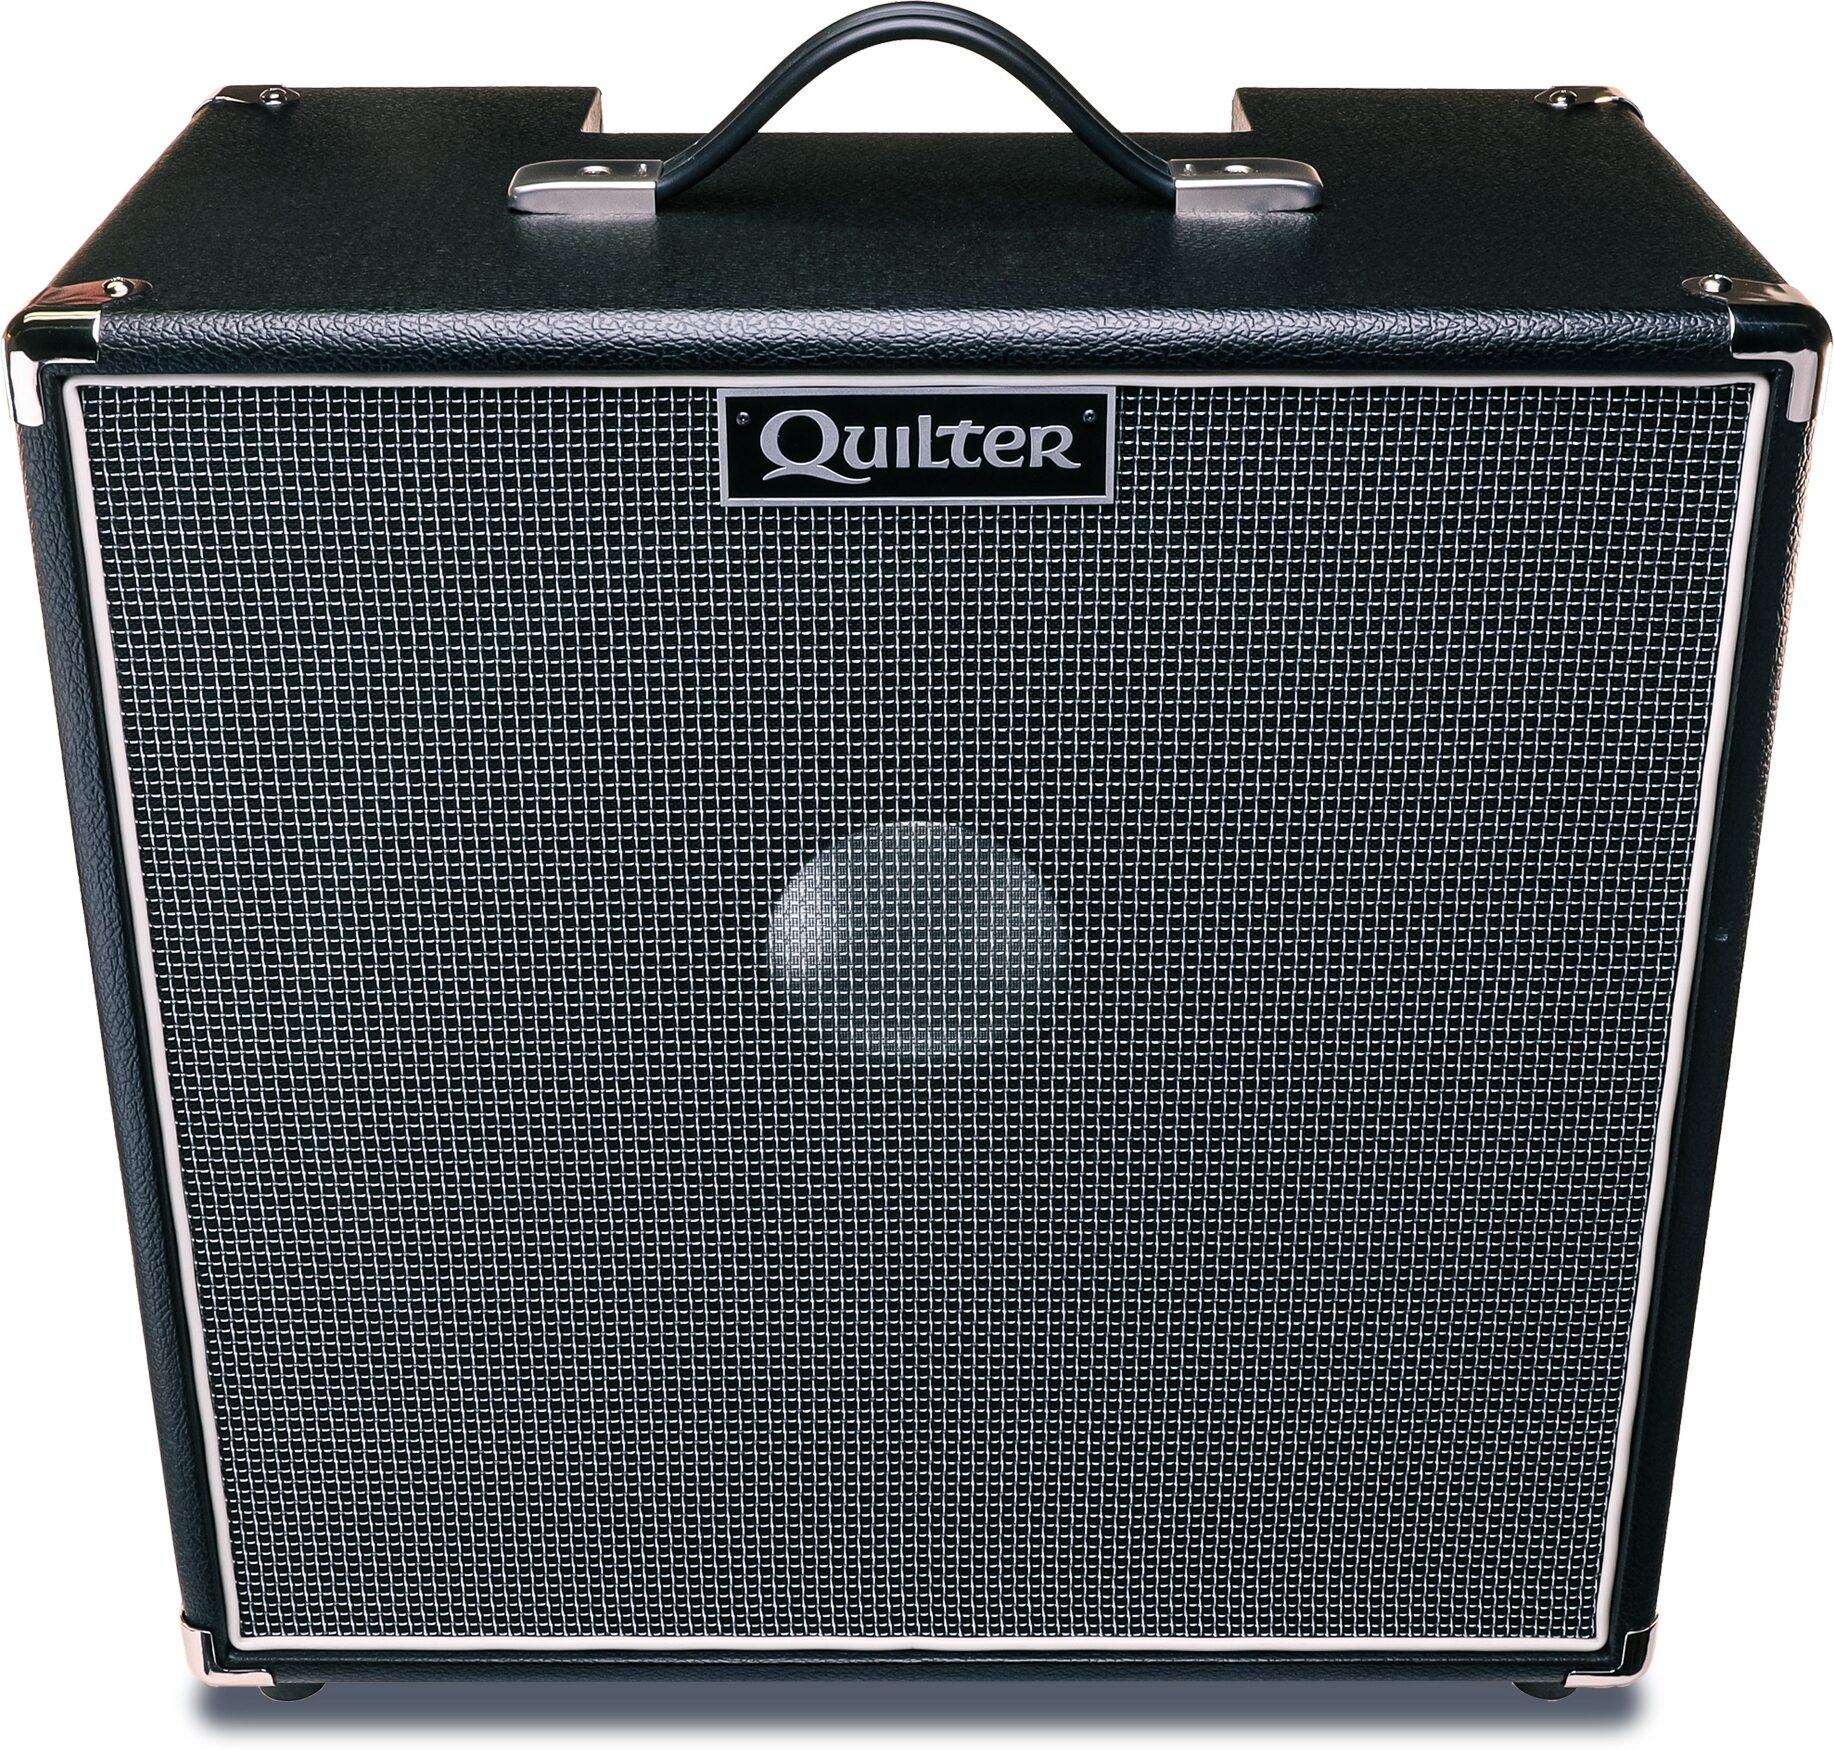 Quilter Blockdock 15 Guitar Speaker Cabinet 300 Watts 1x15